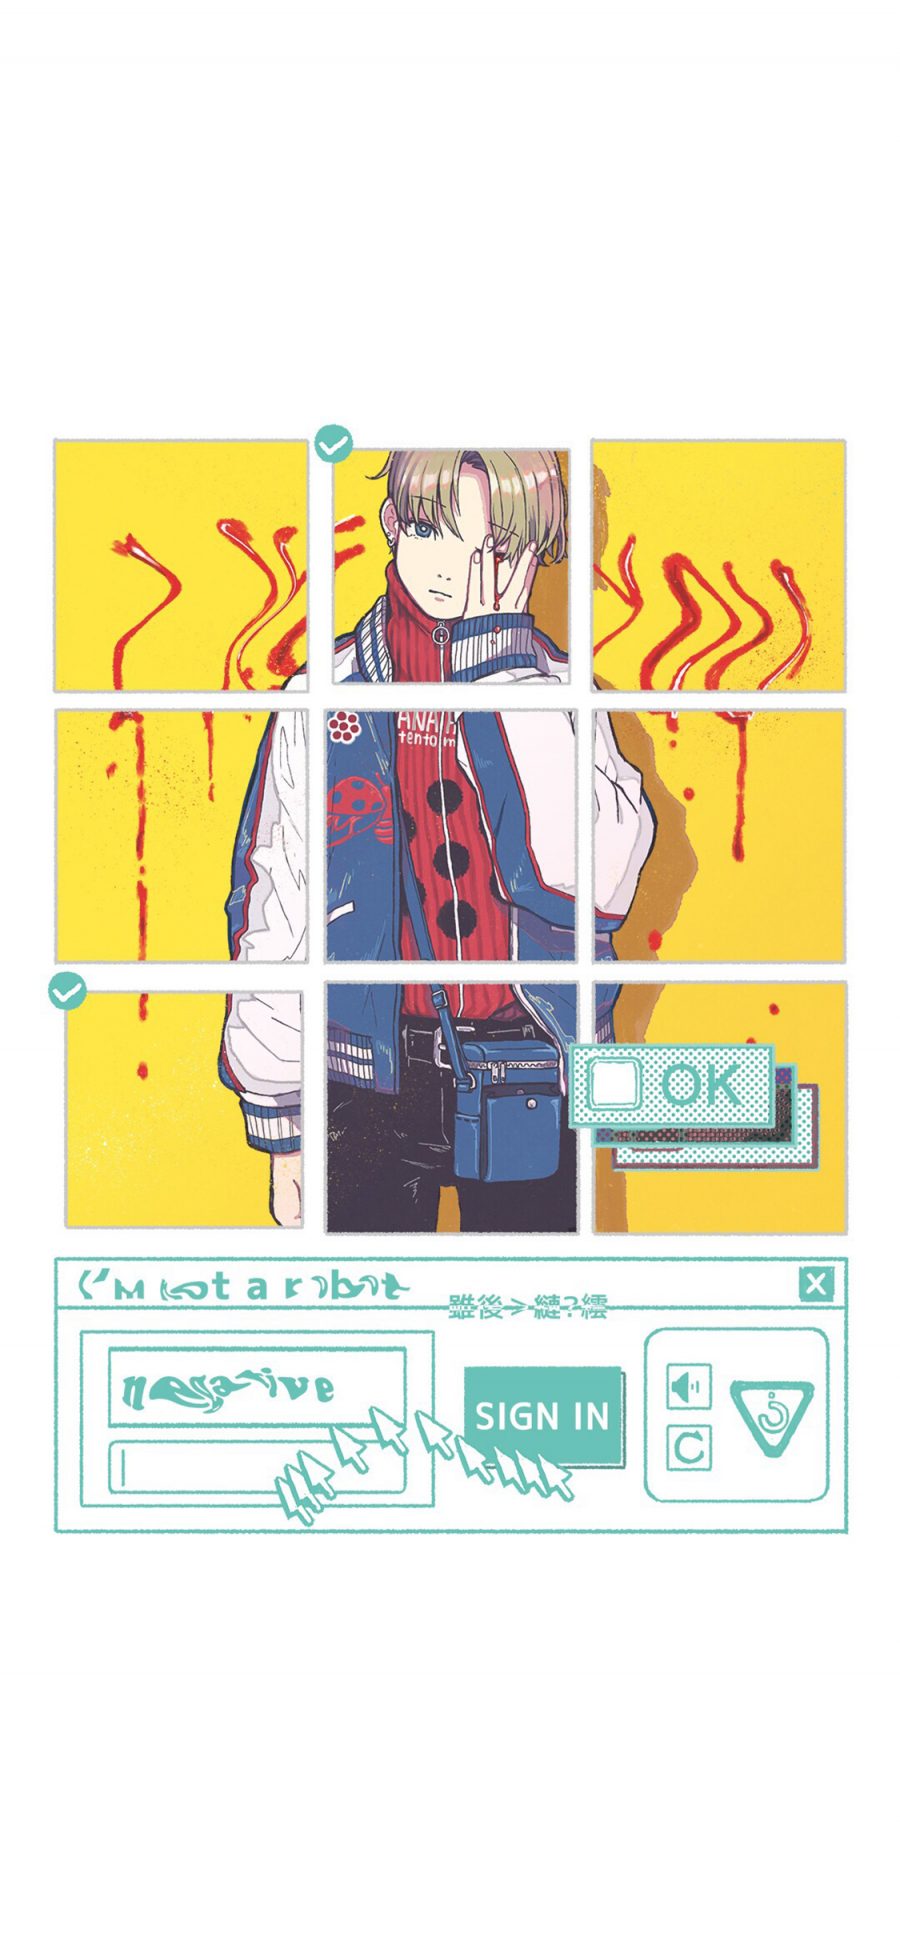 [2436×1125]Jungoro插图 男孩 九宫格 苹果手机动漫壁纸图片